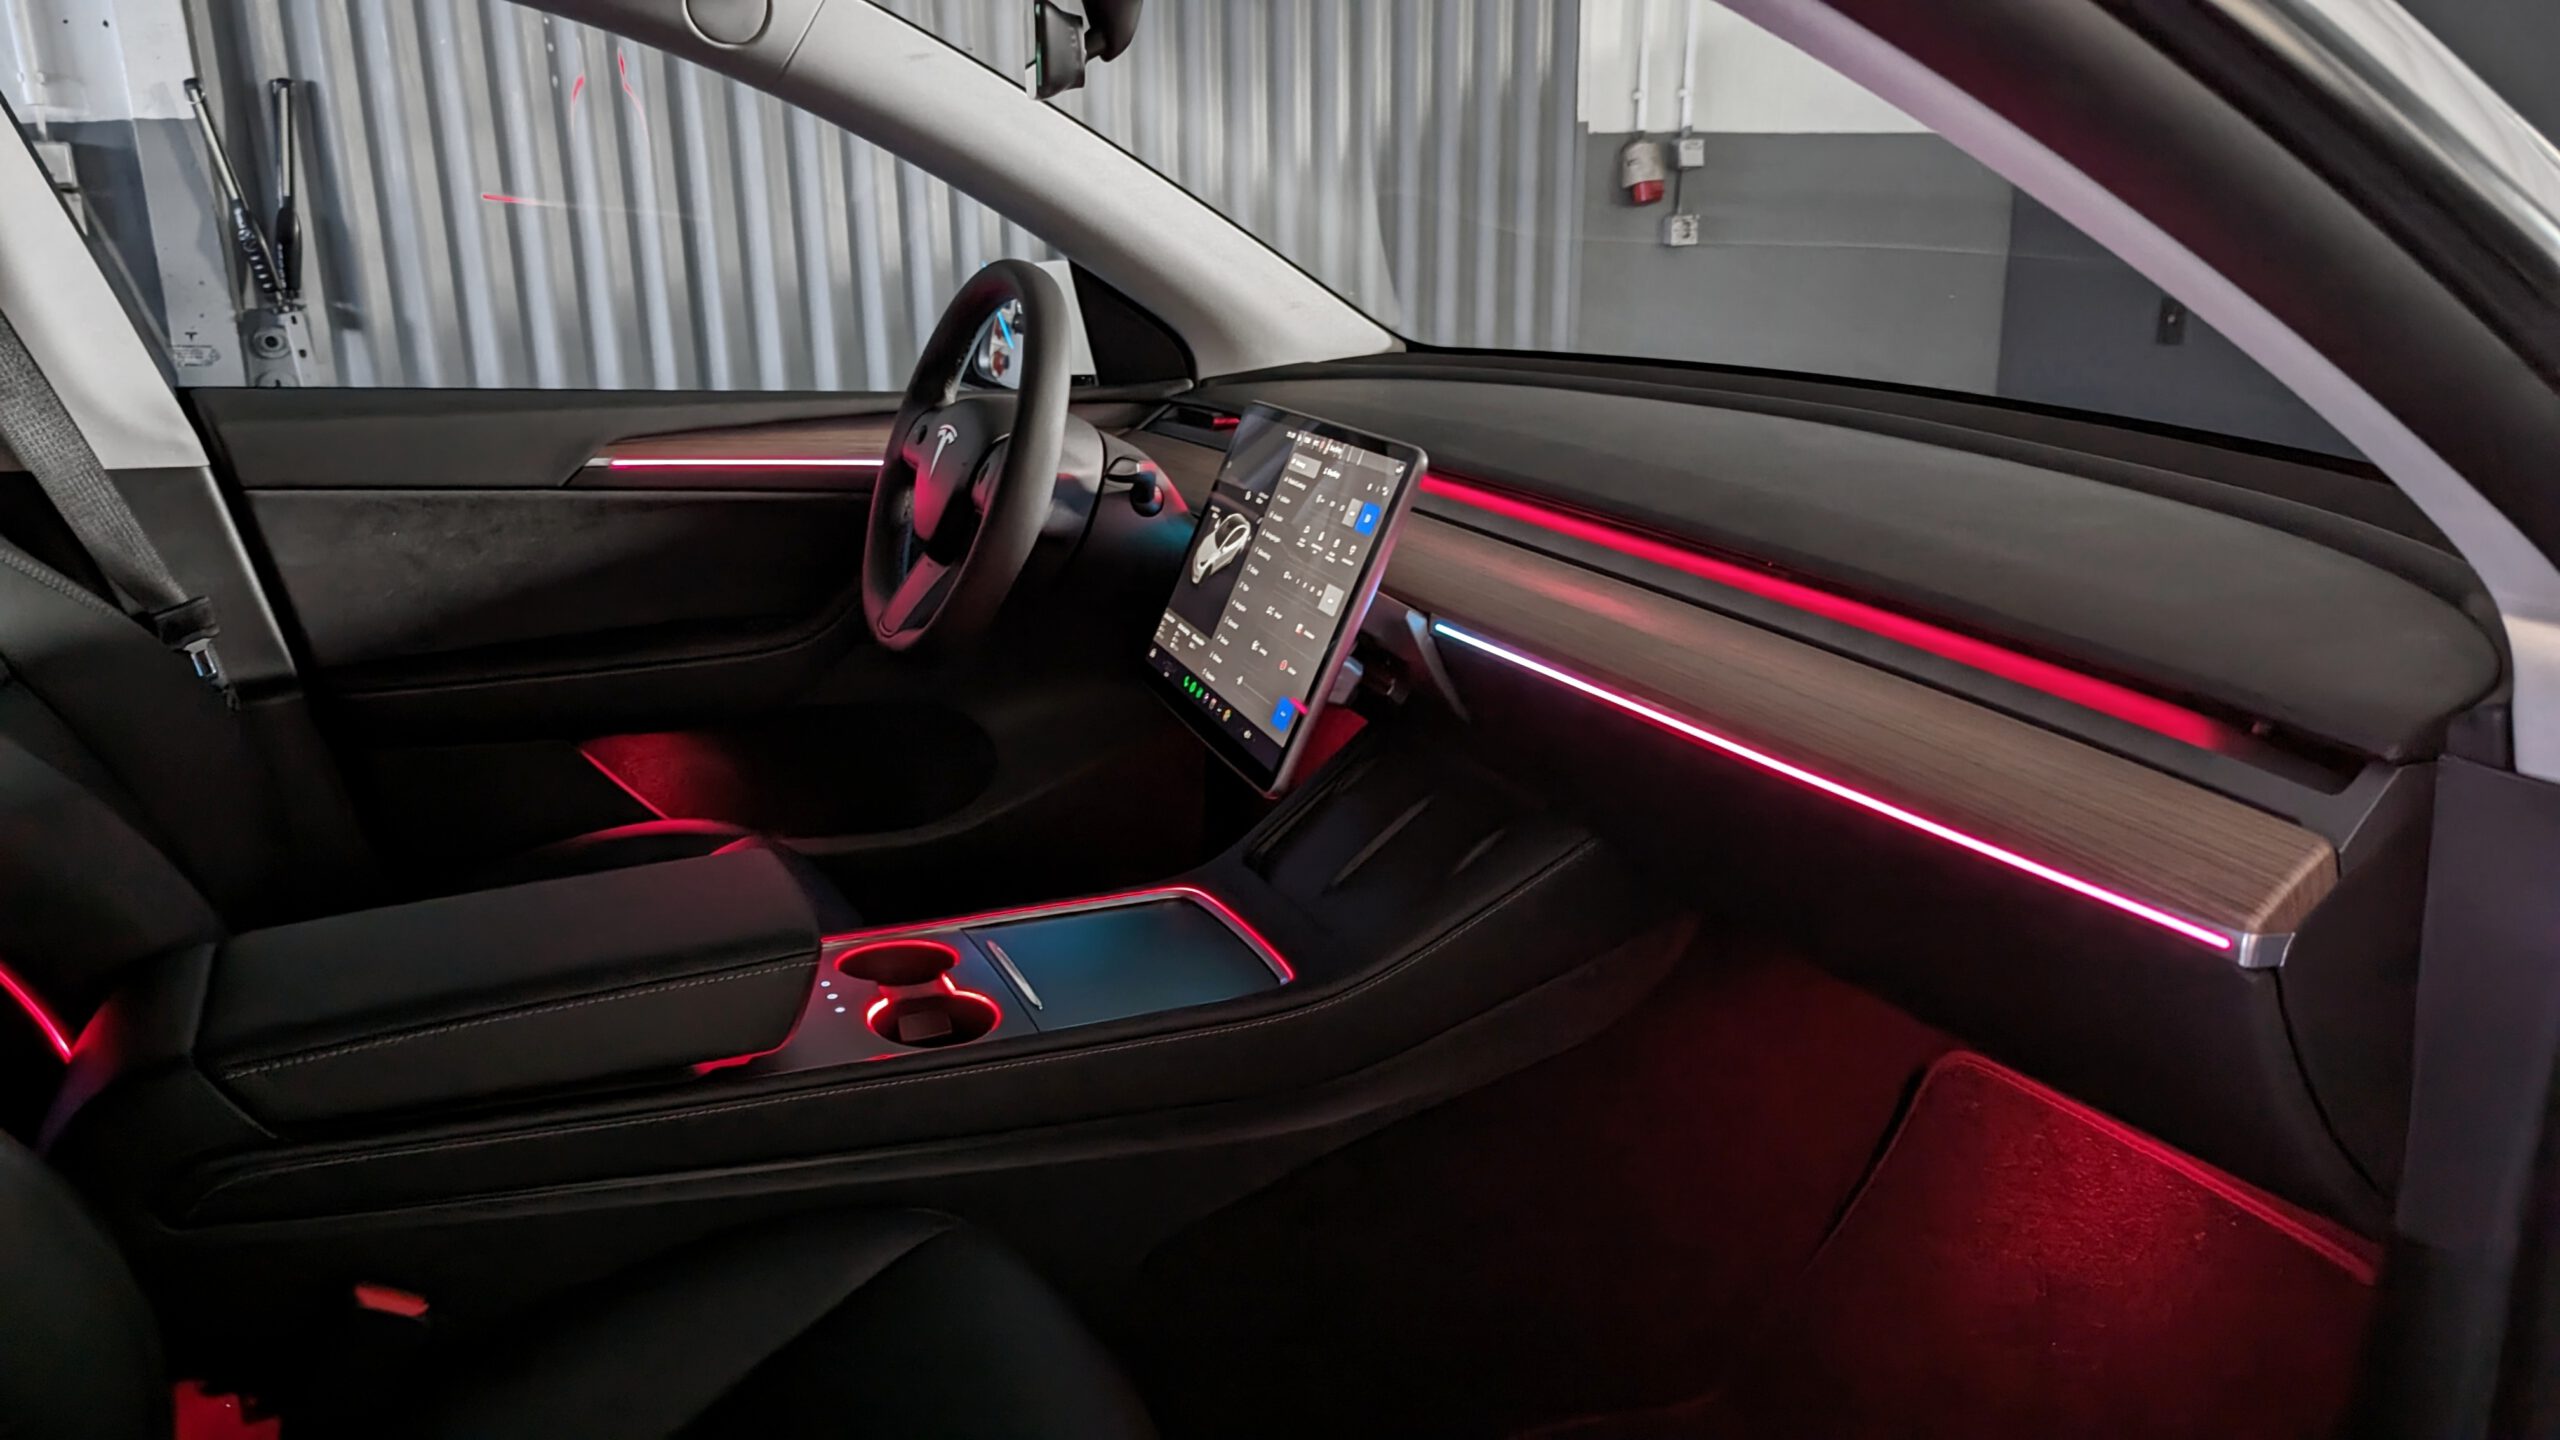 Auto-led-fußraumbeleuchtung Mit 3 Farben Für Auto, Zuhause Und